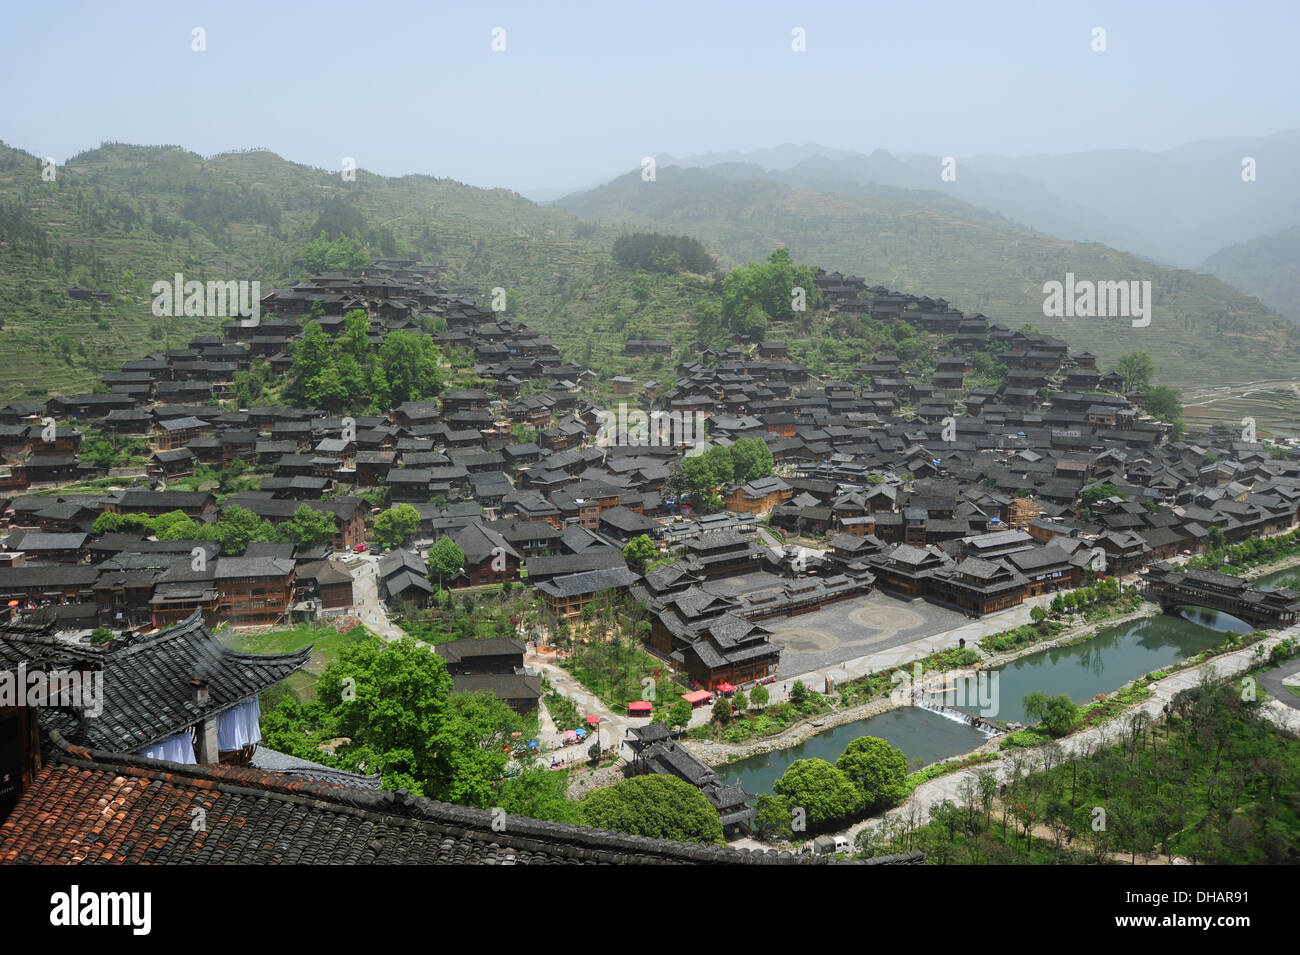 Die Miao ethnische Minderheit Chinas, hat ihren Wohnsitz auf der Piste am Hang und mit schwarzem Dach und braune Wände gebaut. Stockfoto